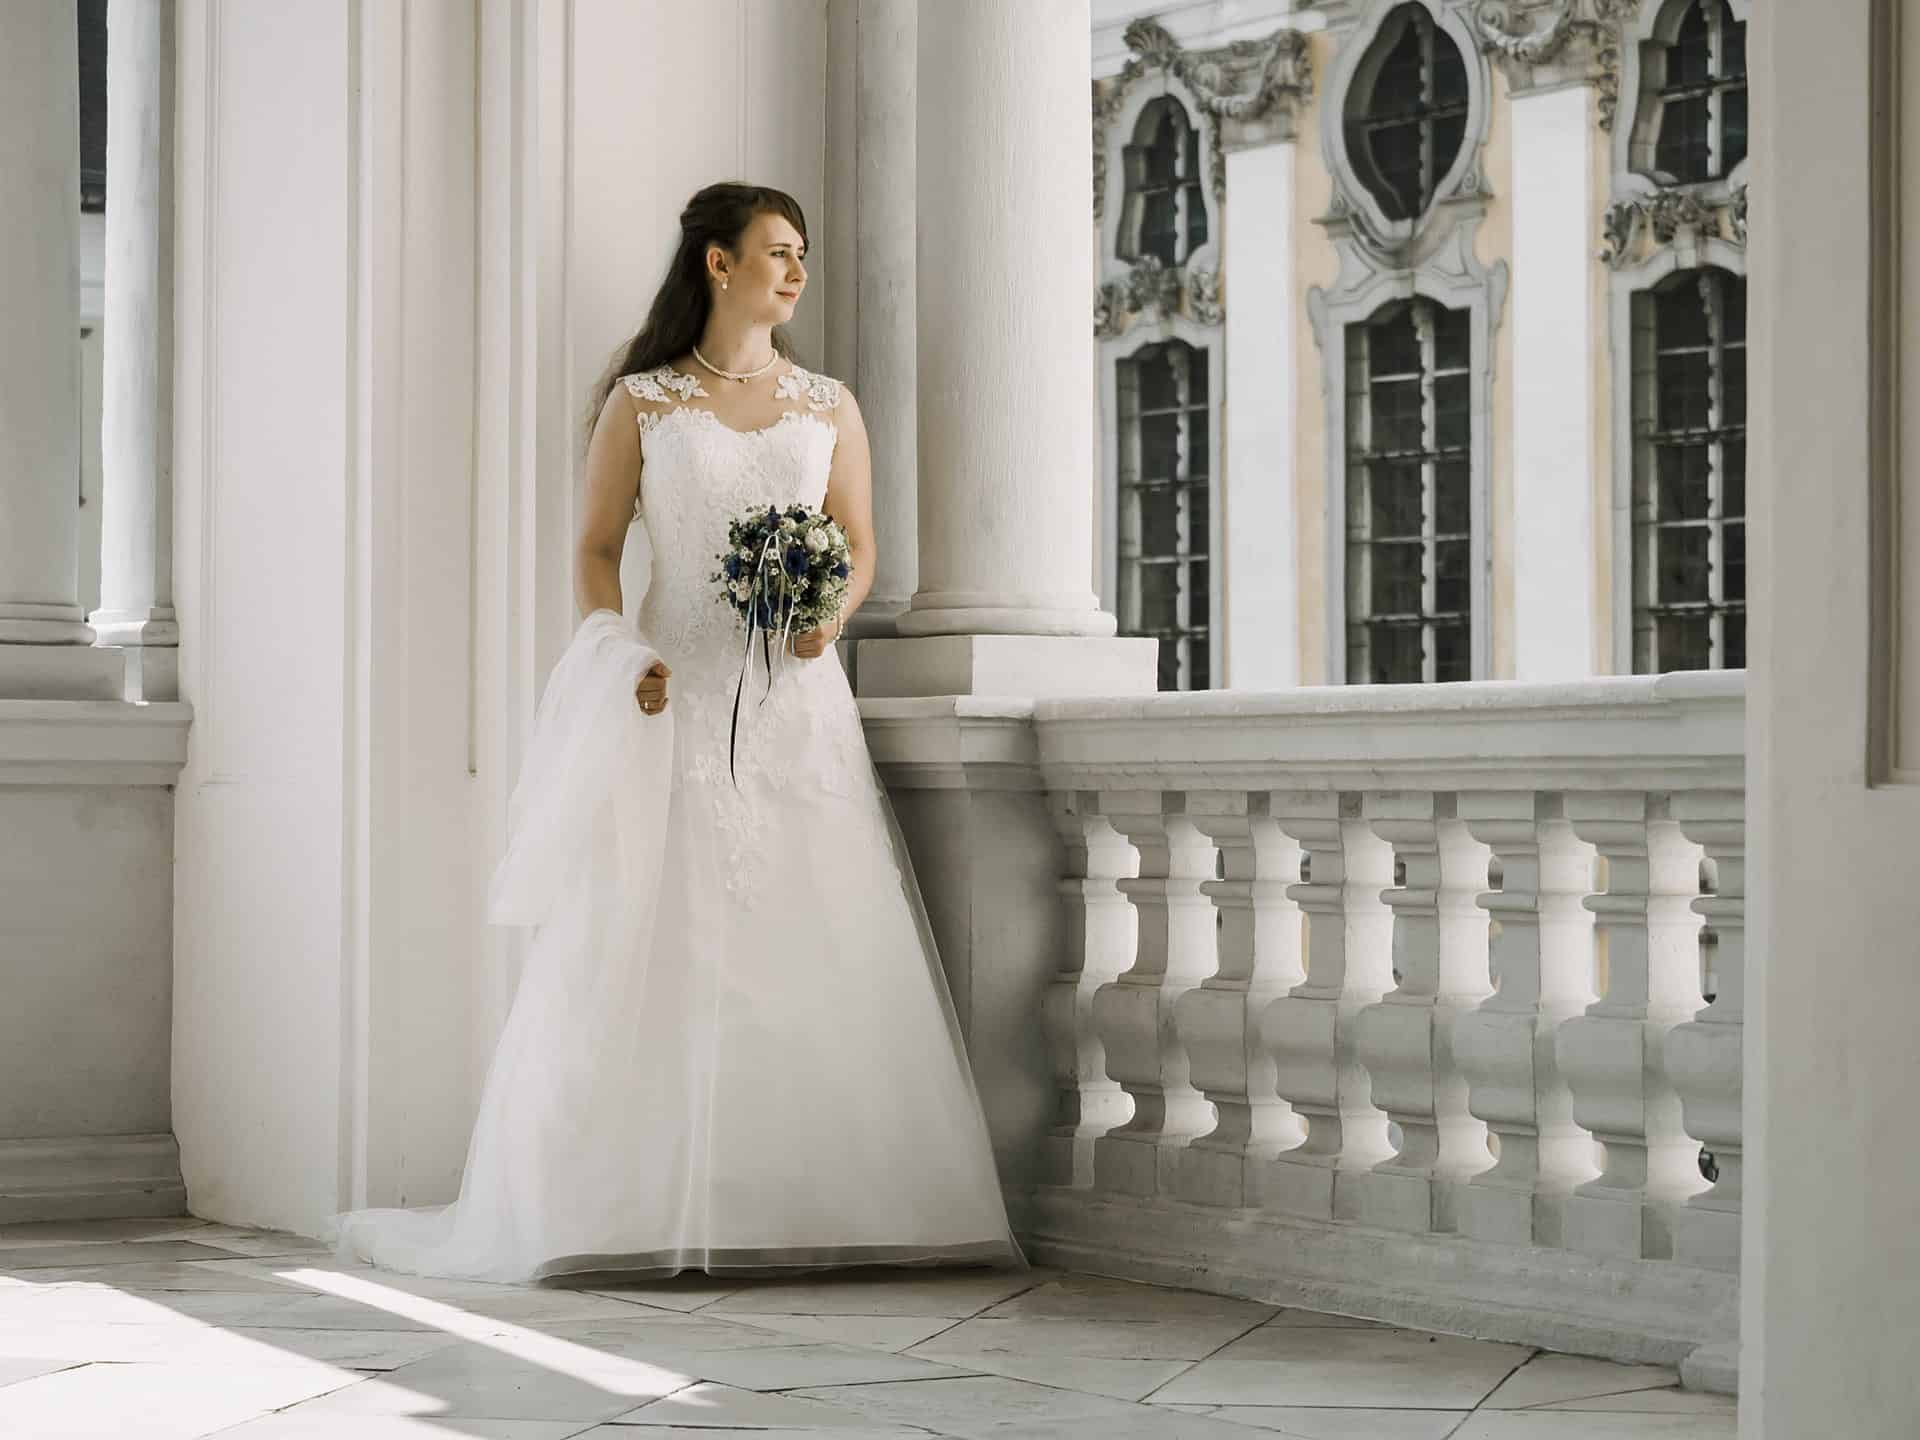 Eine Braut in einem weißen Hochzeitskleid steht auf einem Balkon.